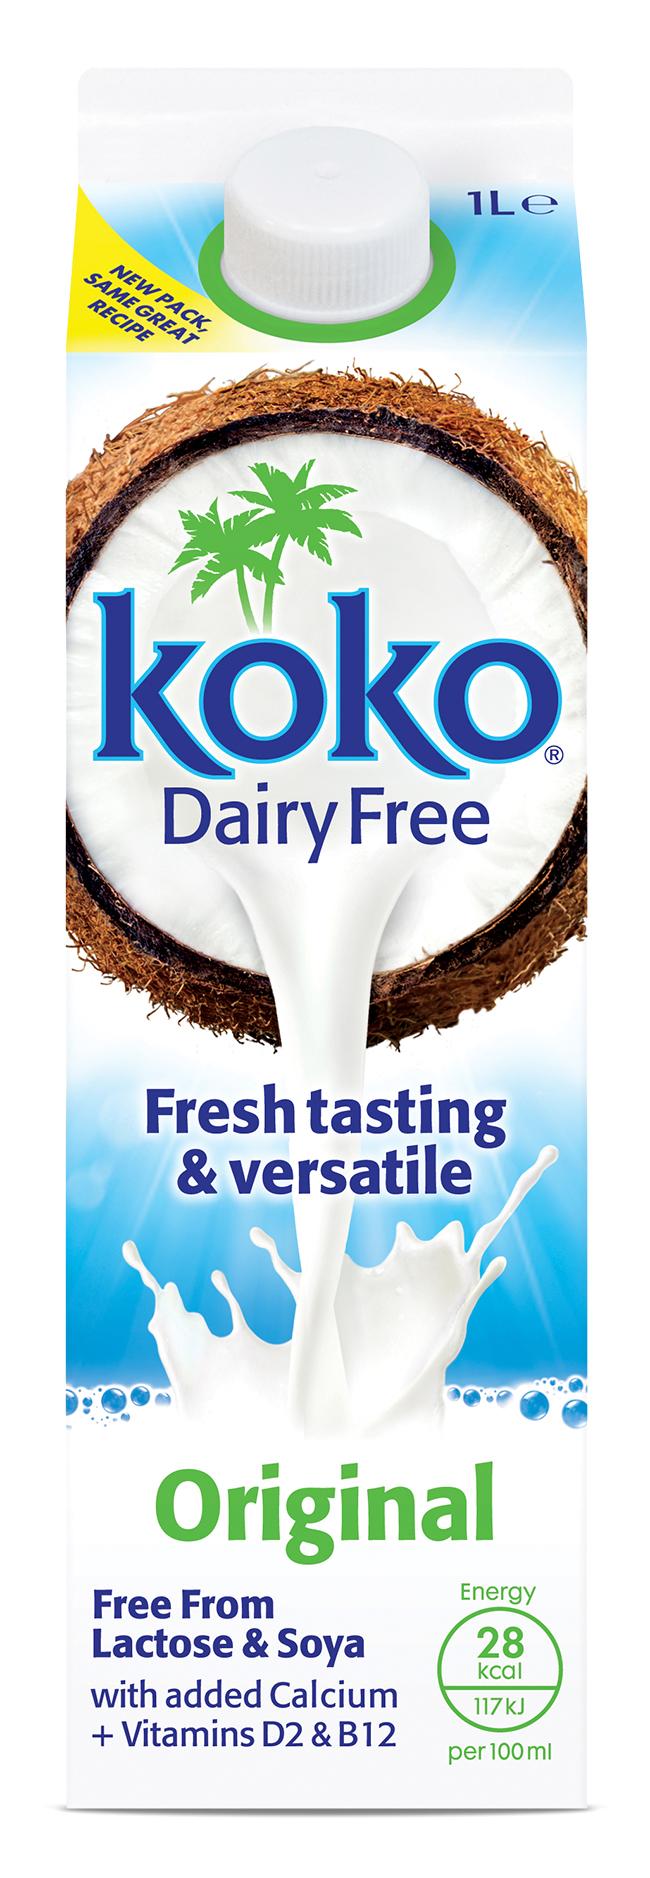 dairy-free milk taste test